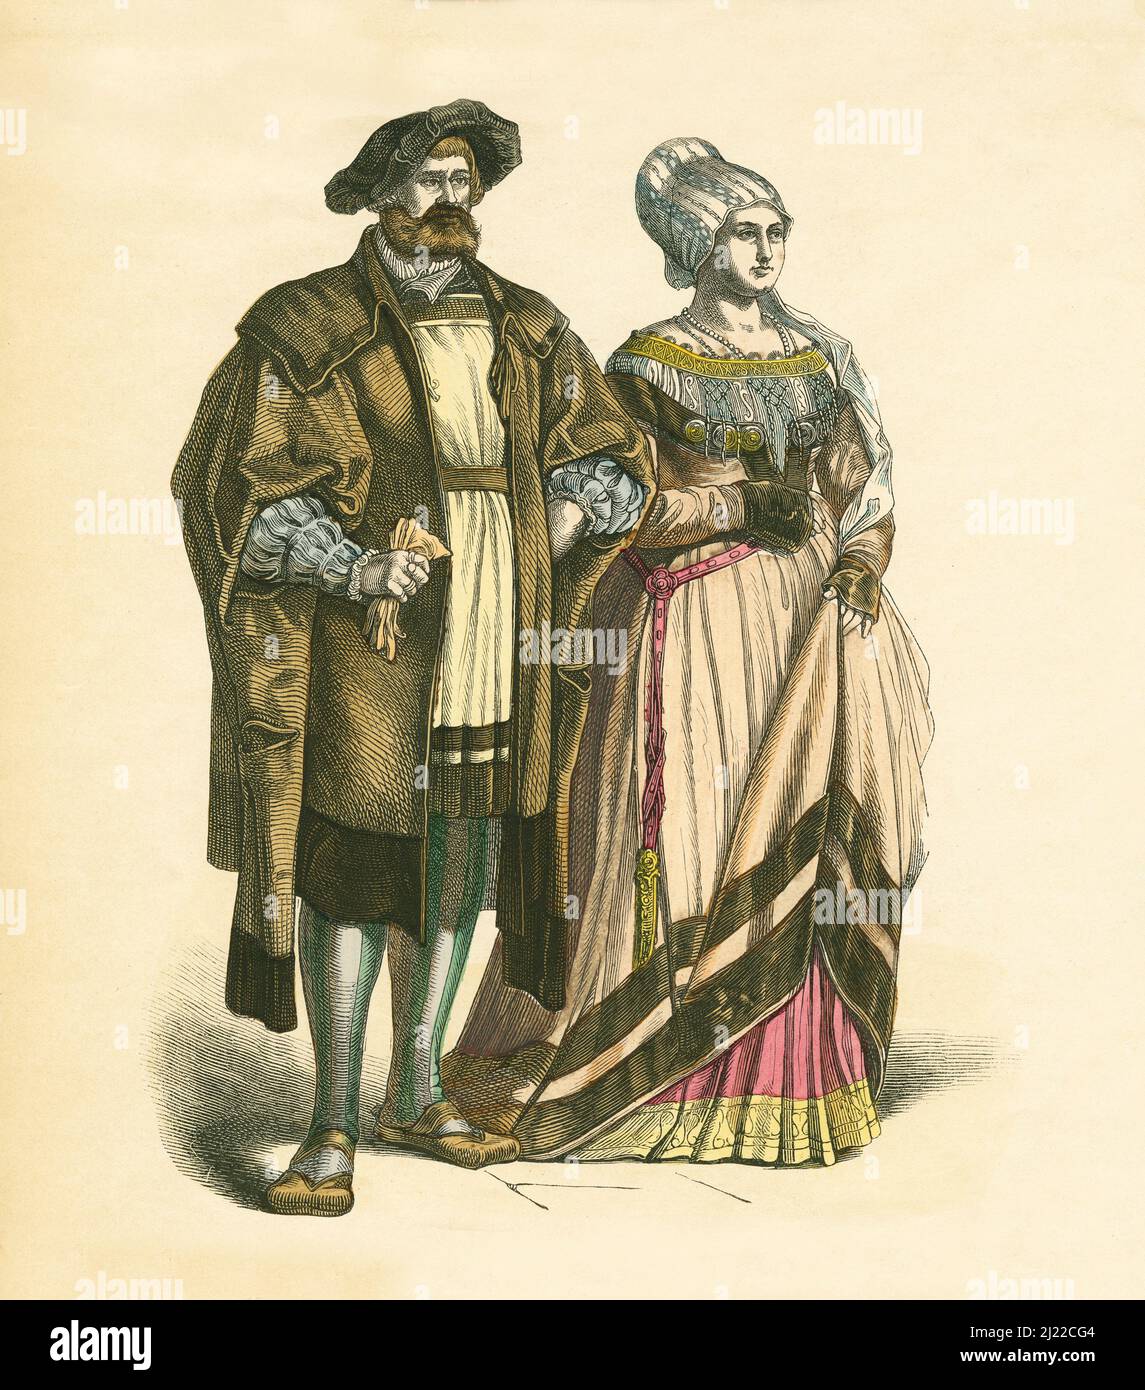 Coppia tedesca, primo terzo del 16th secolo, Illustrazione, la Storia del Costume, Braun & Schneider, Monaco, Germania, 1861-1880 Foto Stock